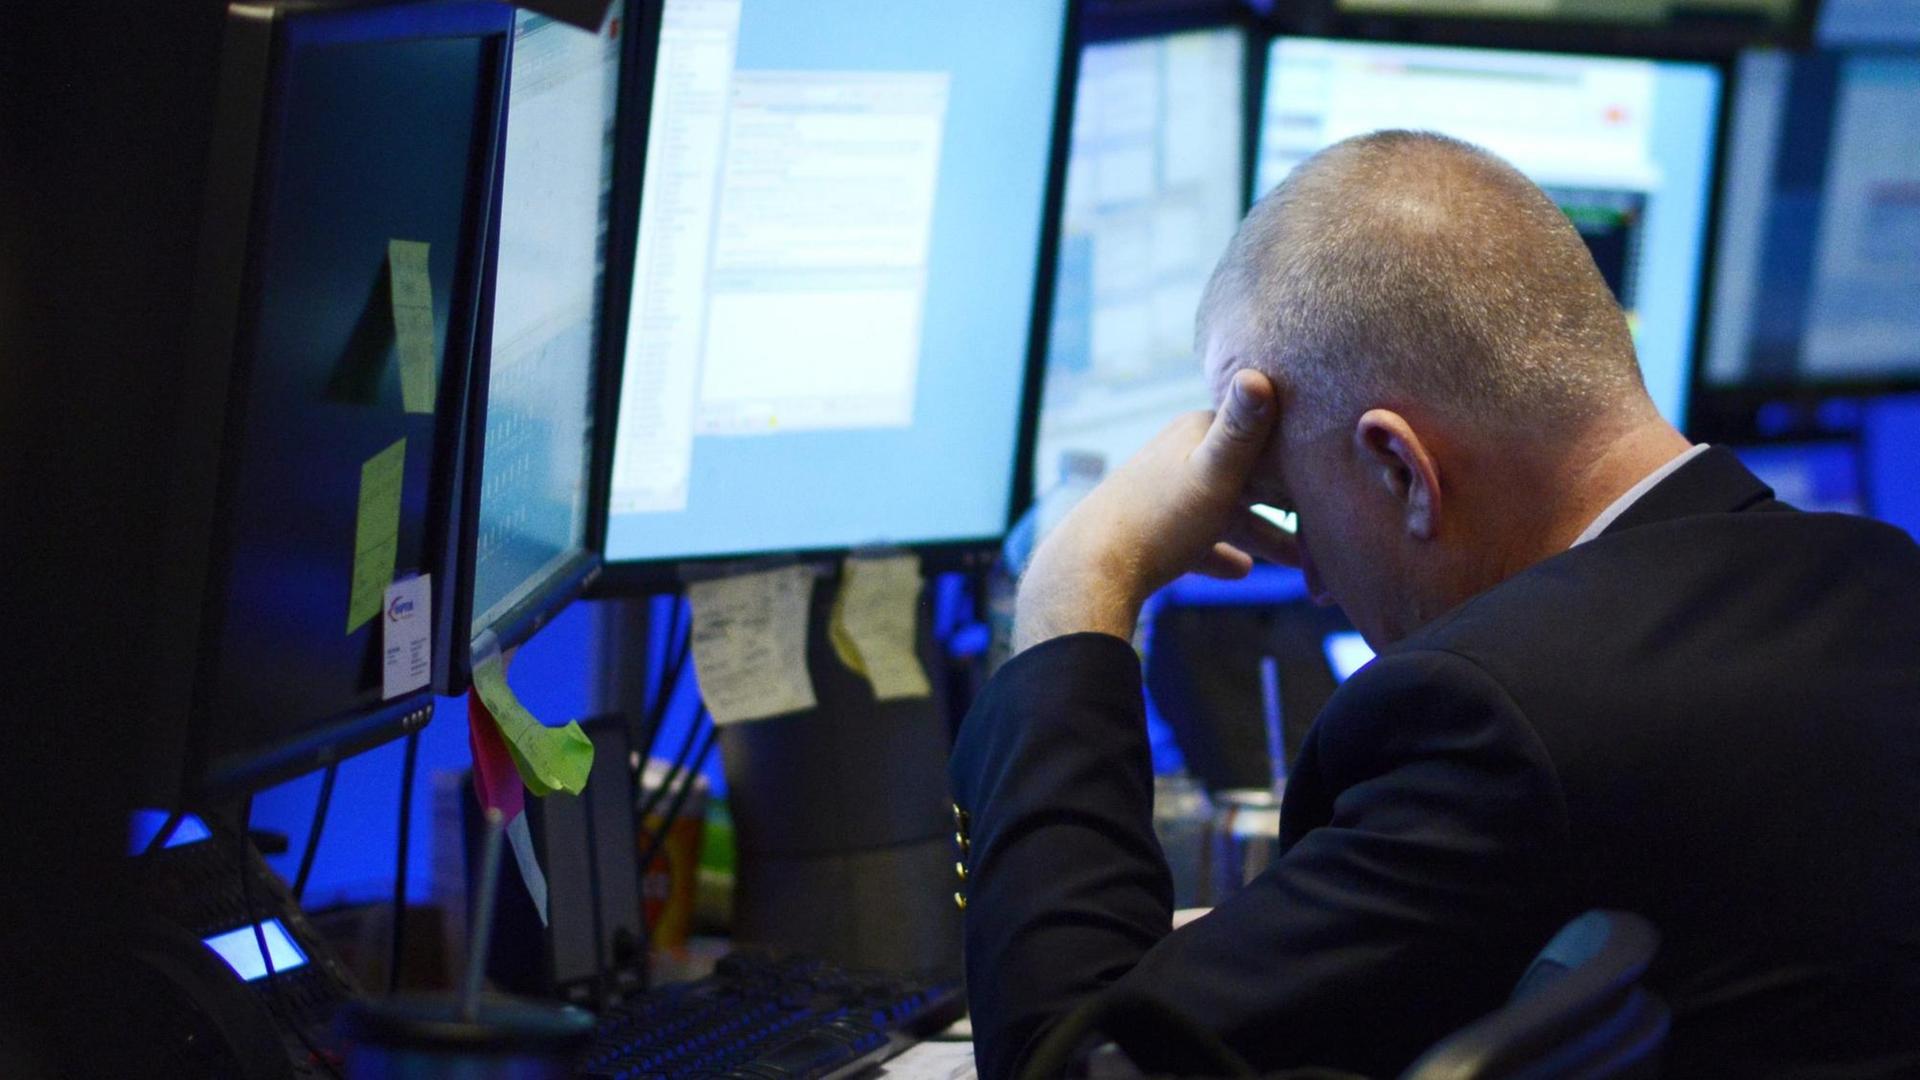 Ein Börsenmakler an der Wall Street in New York legt das Gesicht angesichts hoher Kursverluste in die Hände.